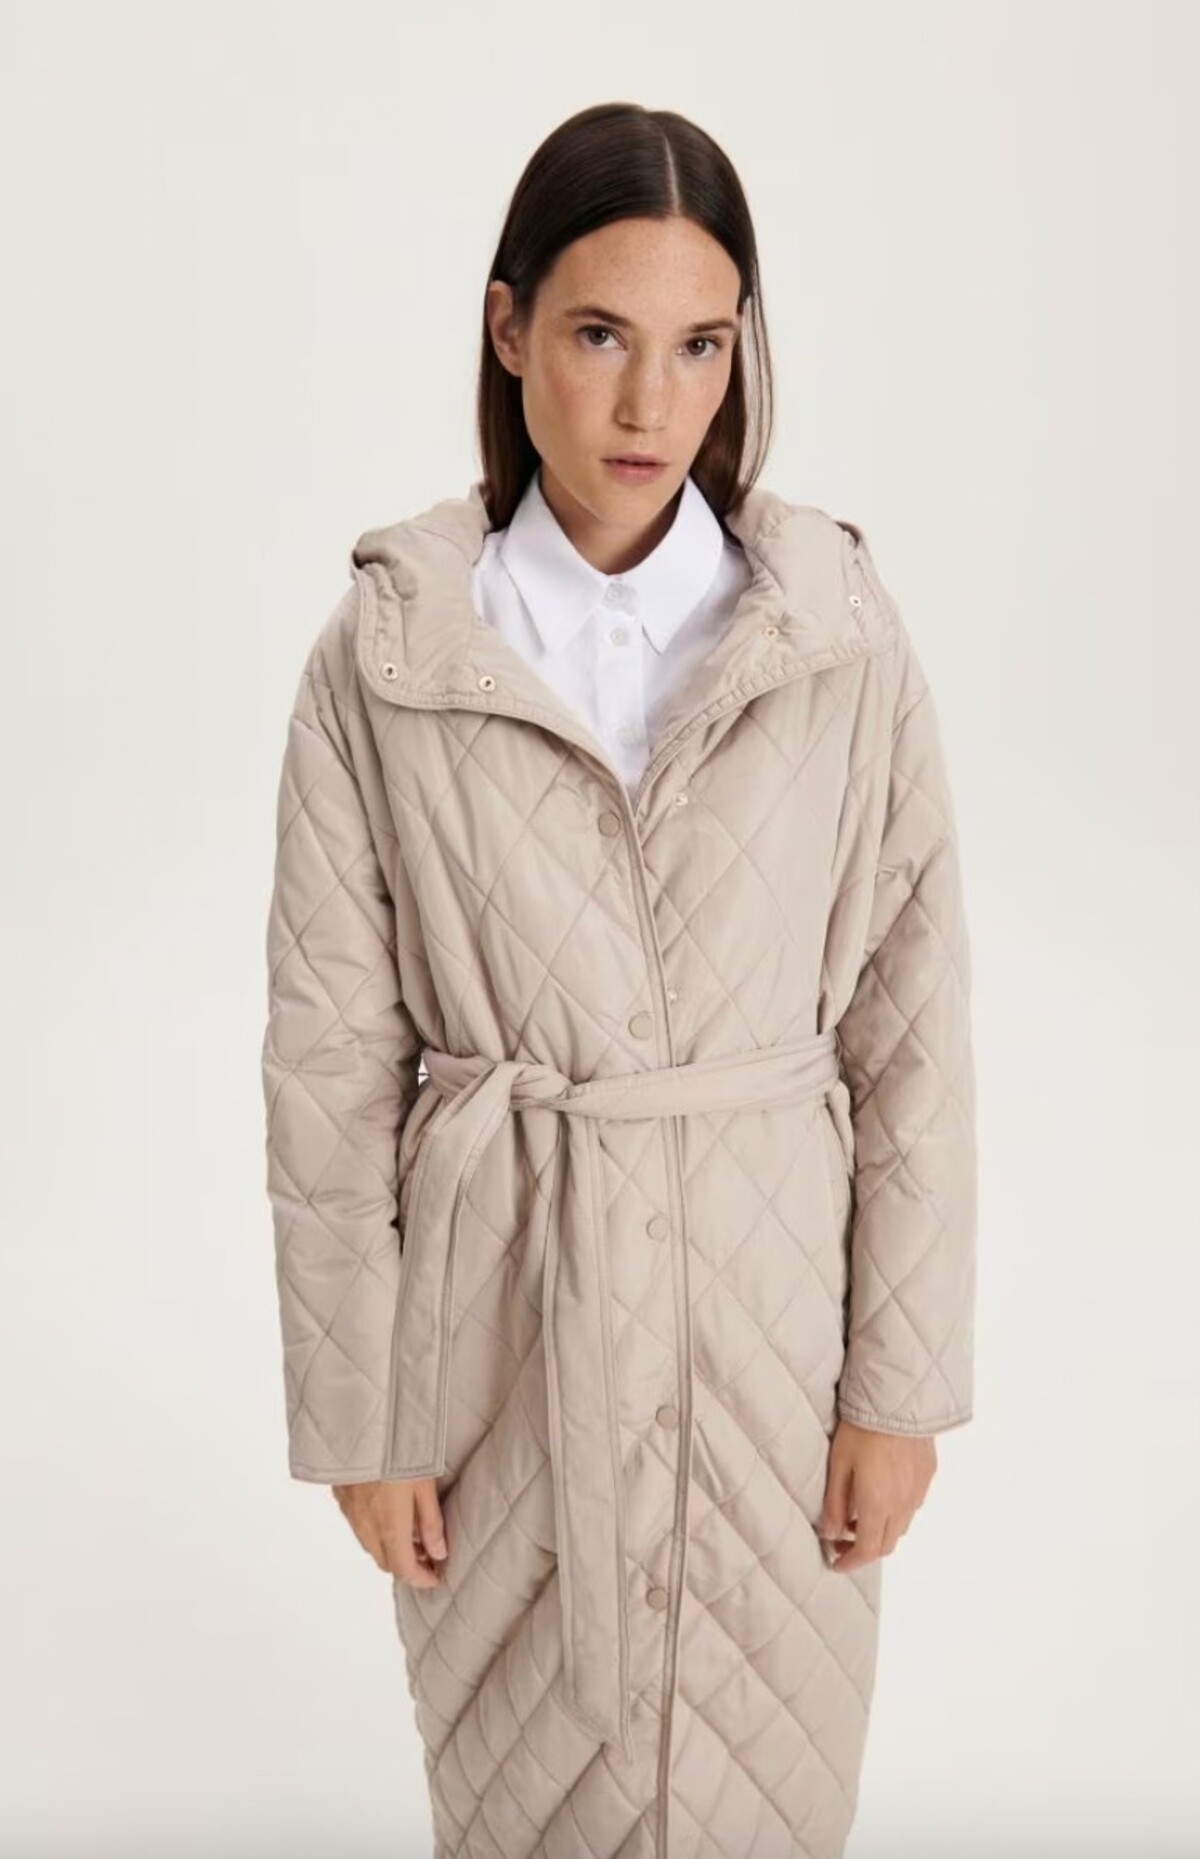 Béžový prešívaný kabát so zaväzovacím opaskom nájdeš za 49,99 eura v ponuke značky Reserved.